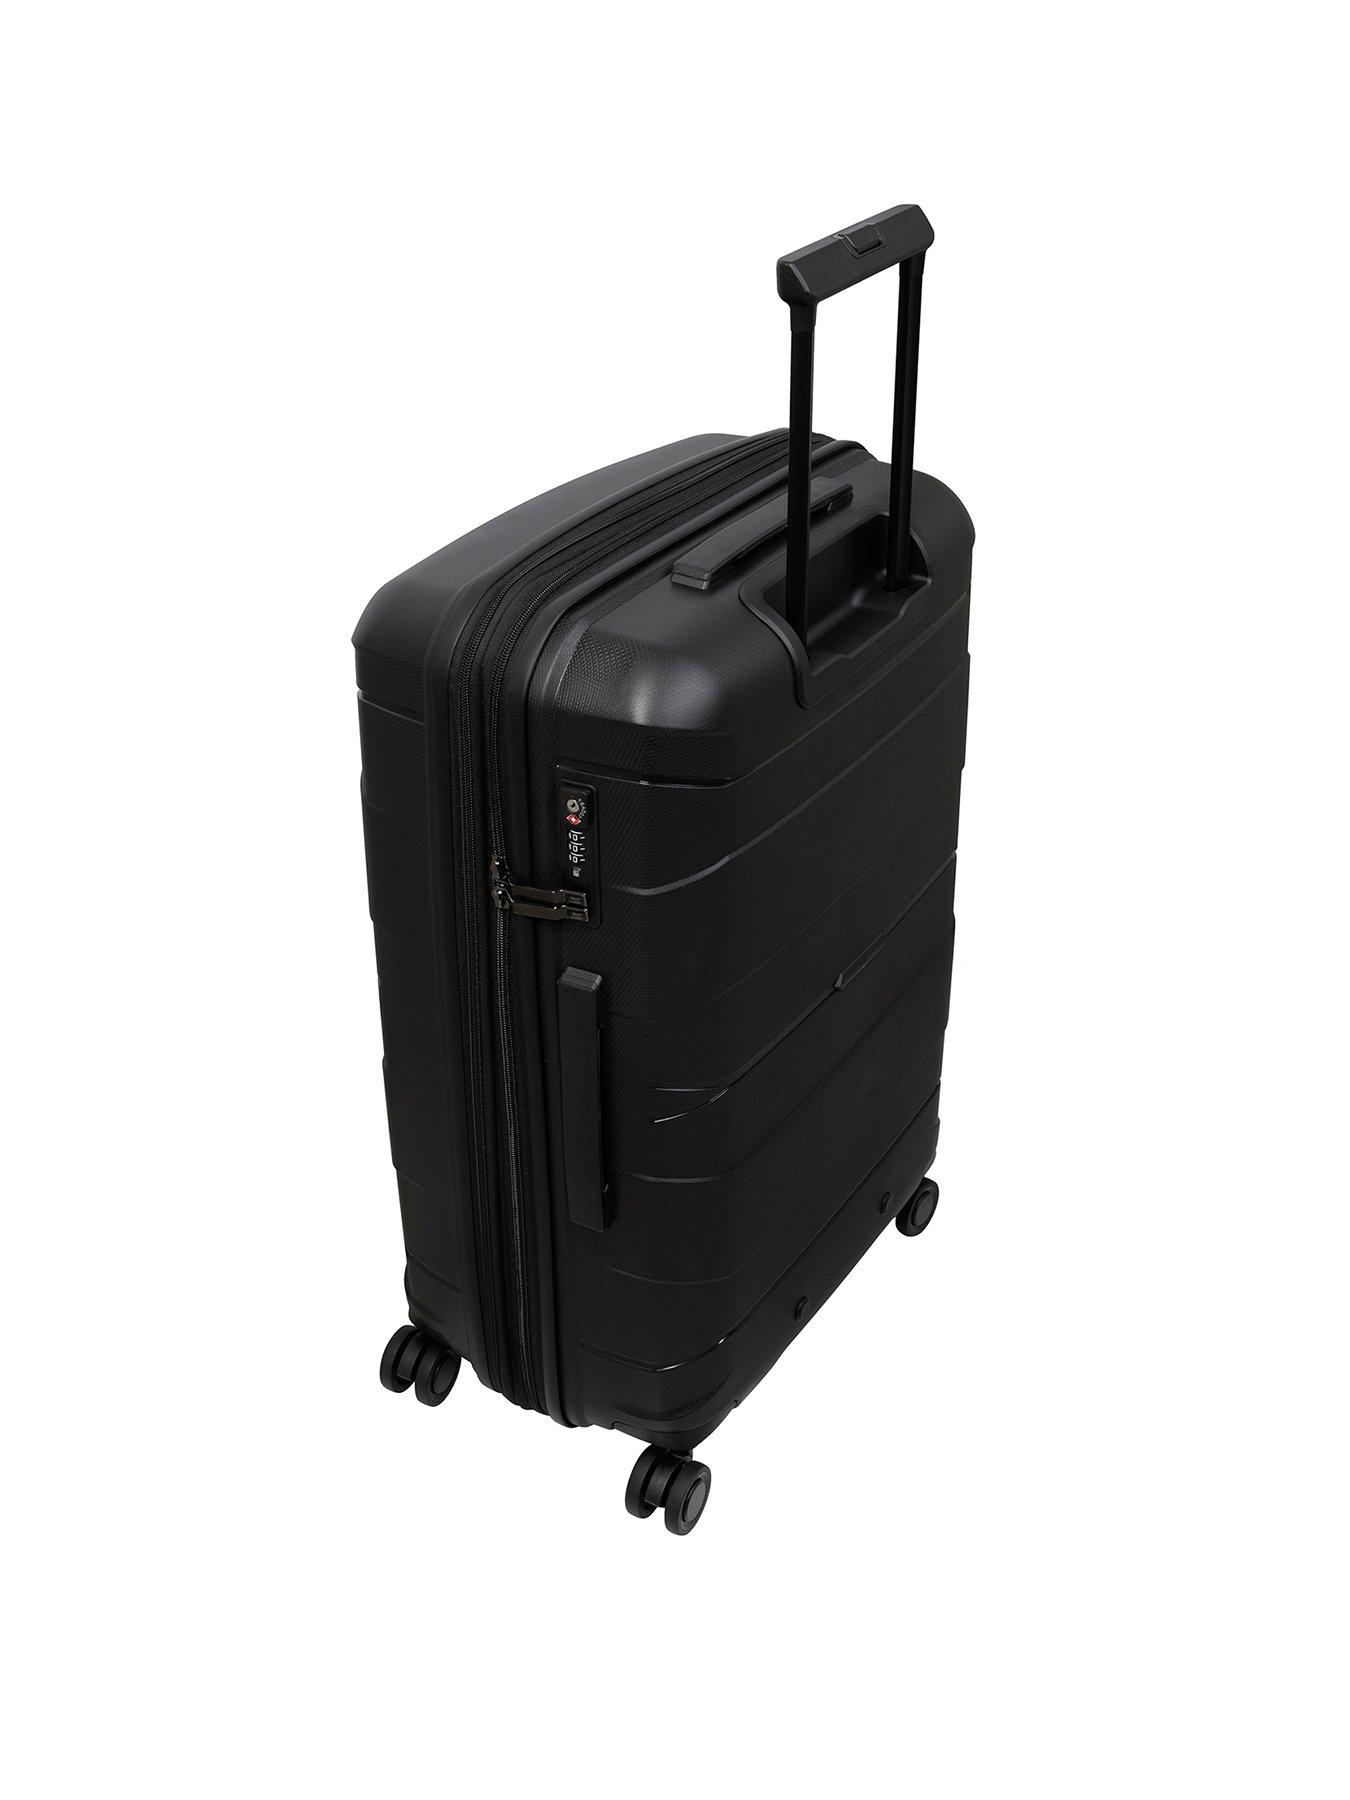 it Luggage Momentous Black Large Expandable Hardshell 8 Wheel Spinner ...